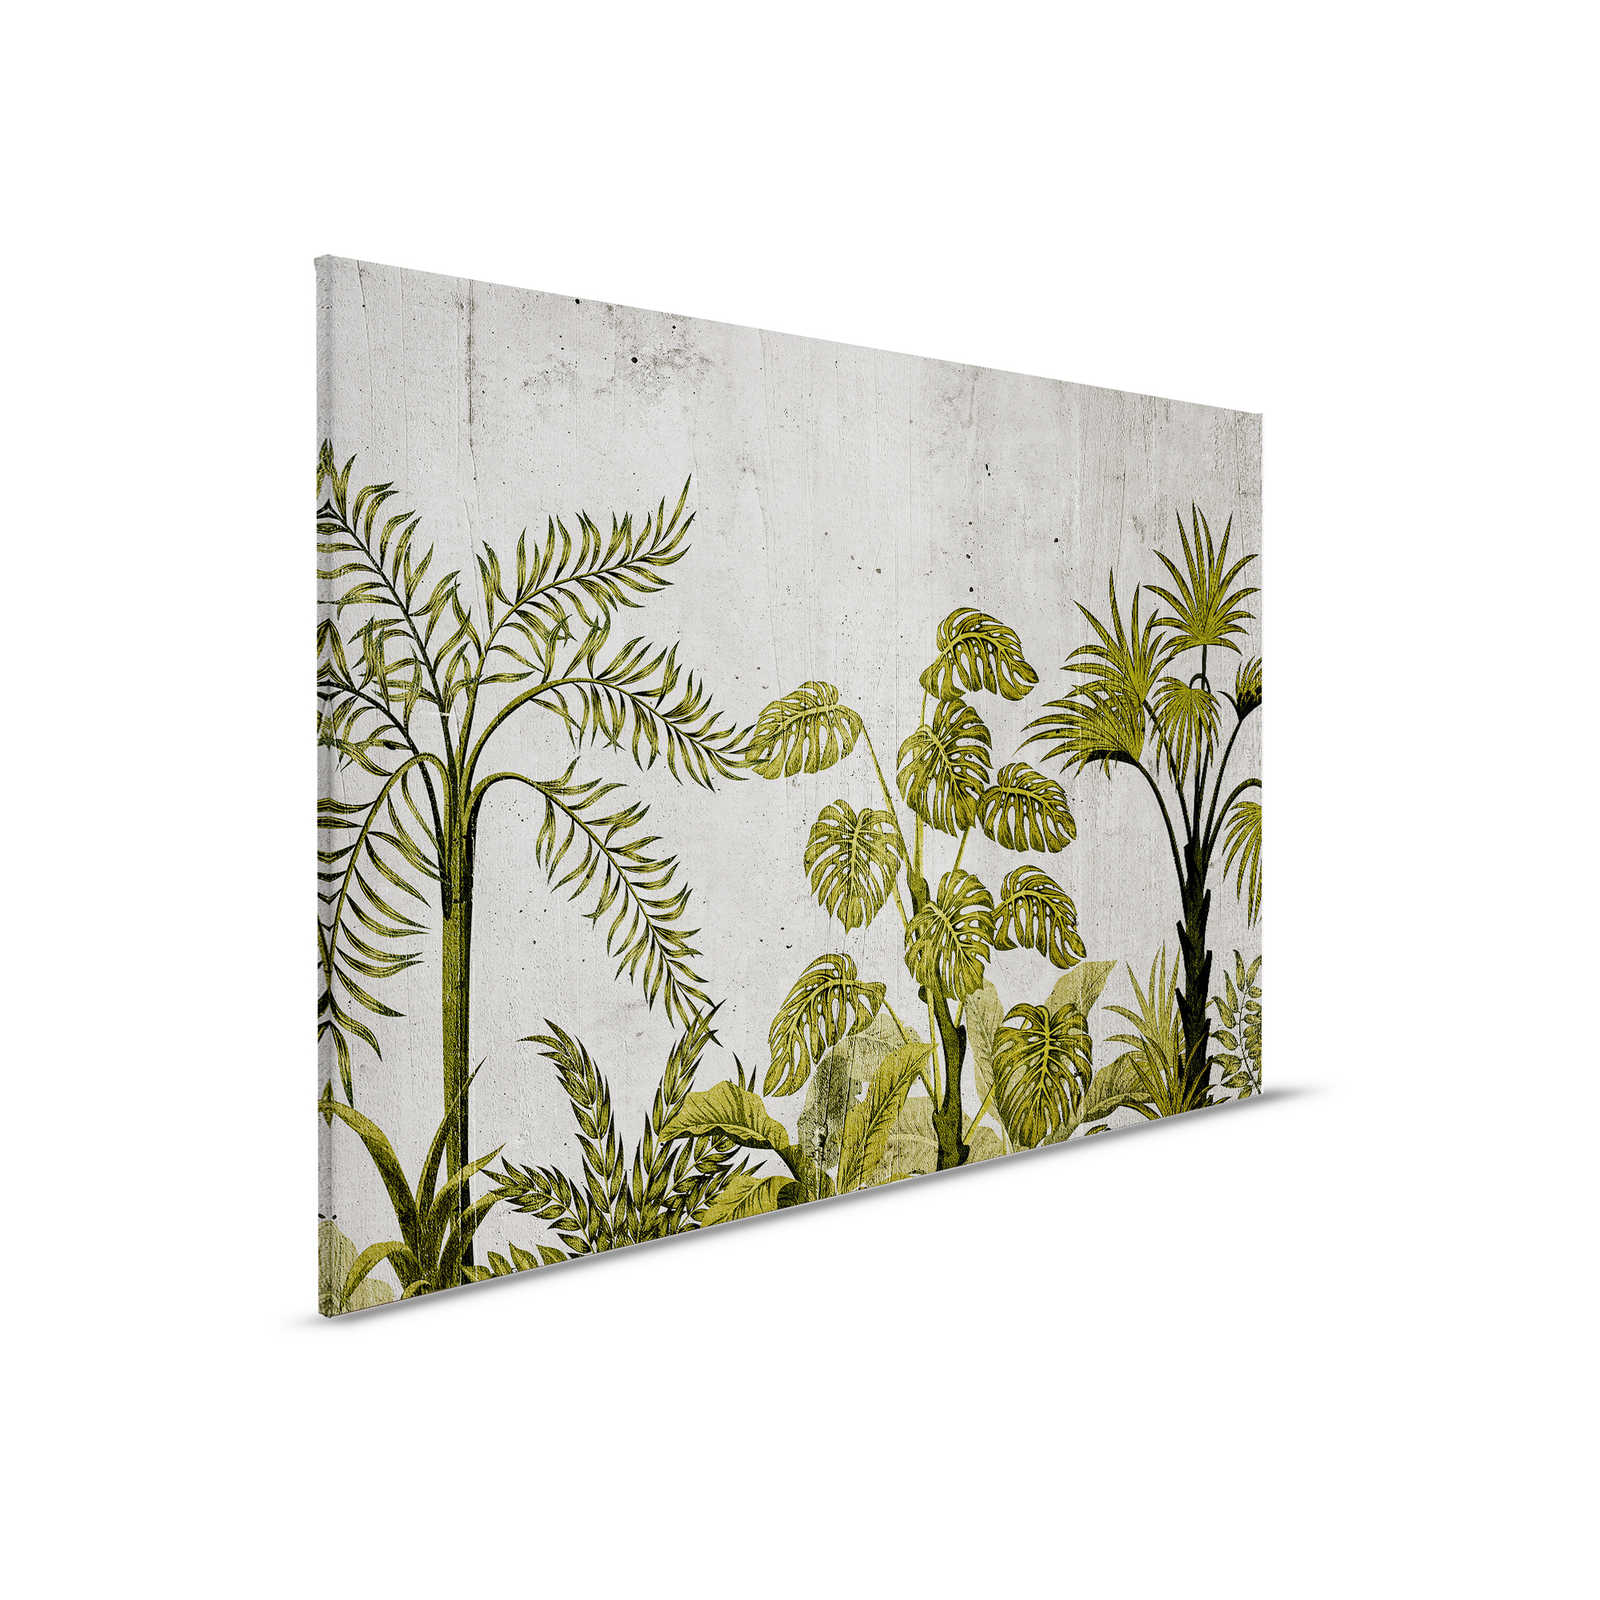 Canvas schilderij met jungle motief op betonnen achtergrond - 0,90 m x 0,60 m
